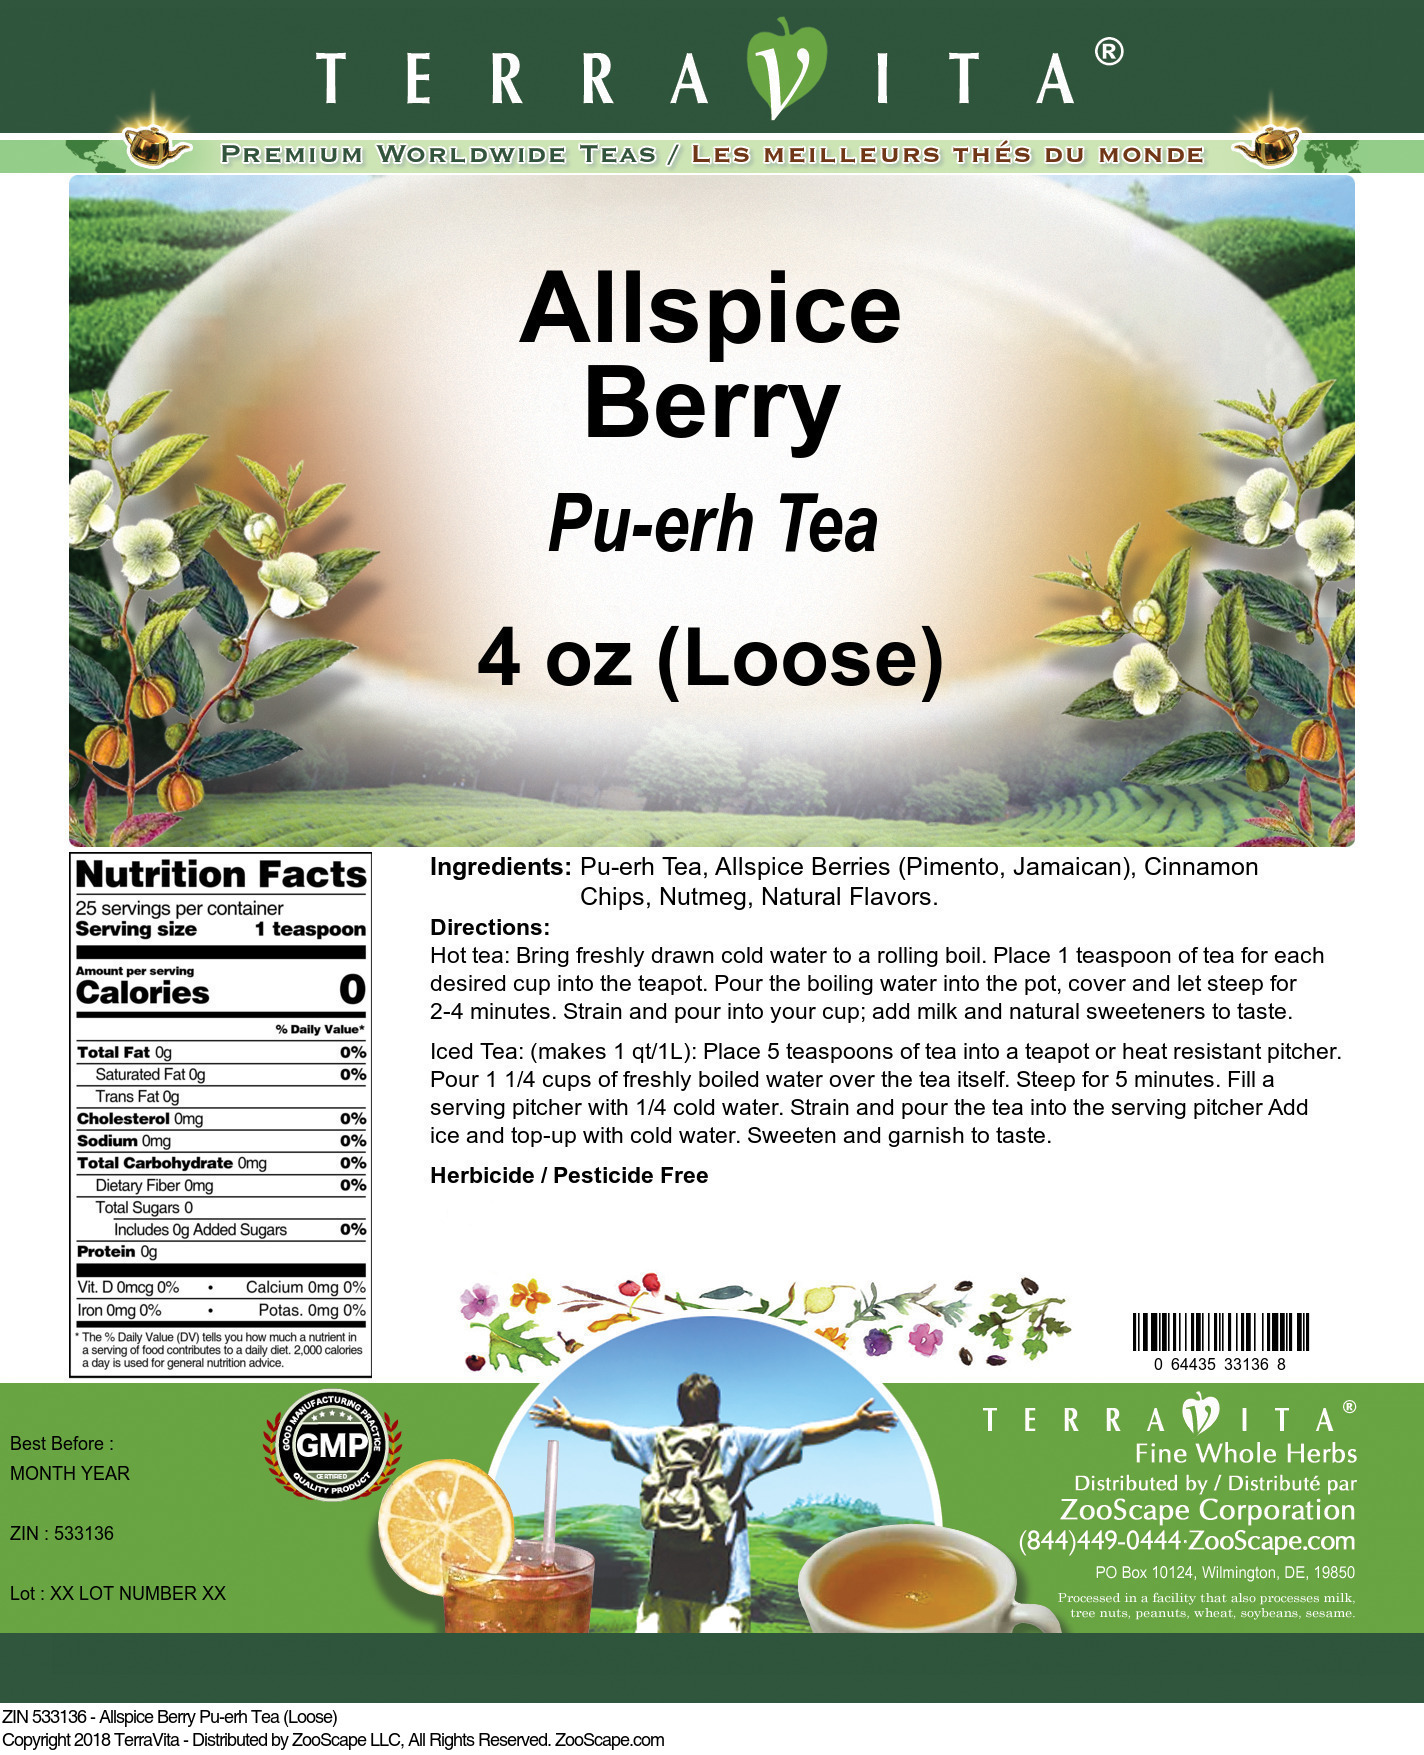 Allspice Berry Pu-erh Tea (Loose) - Label